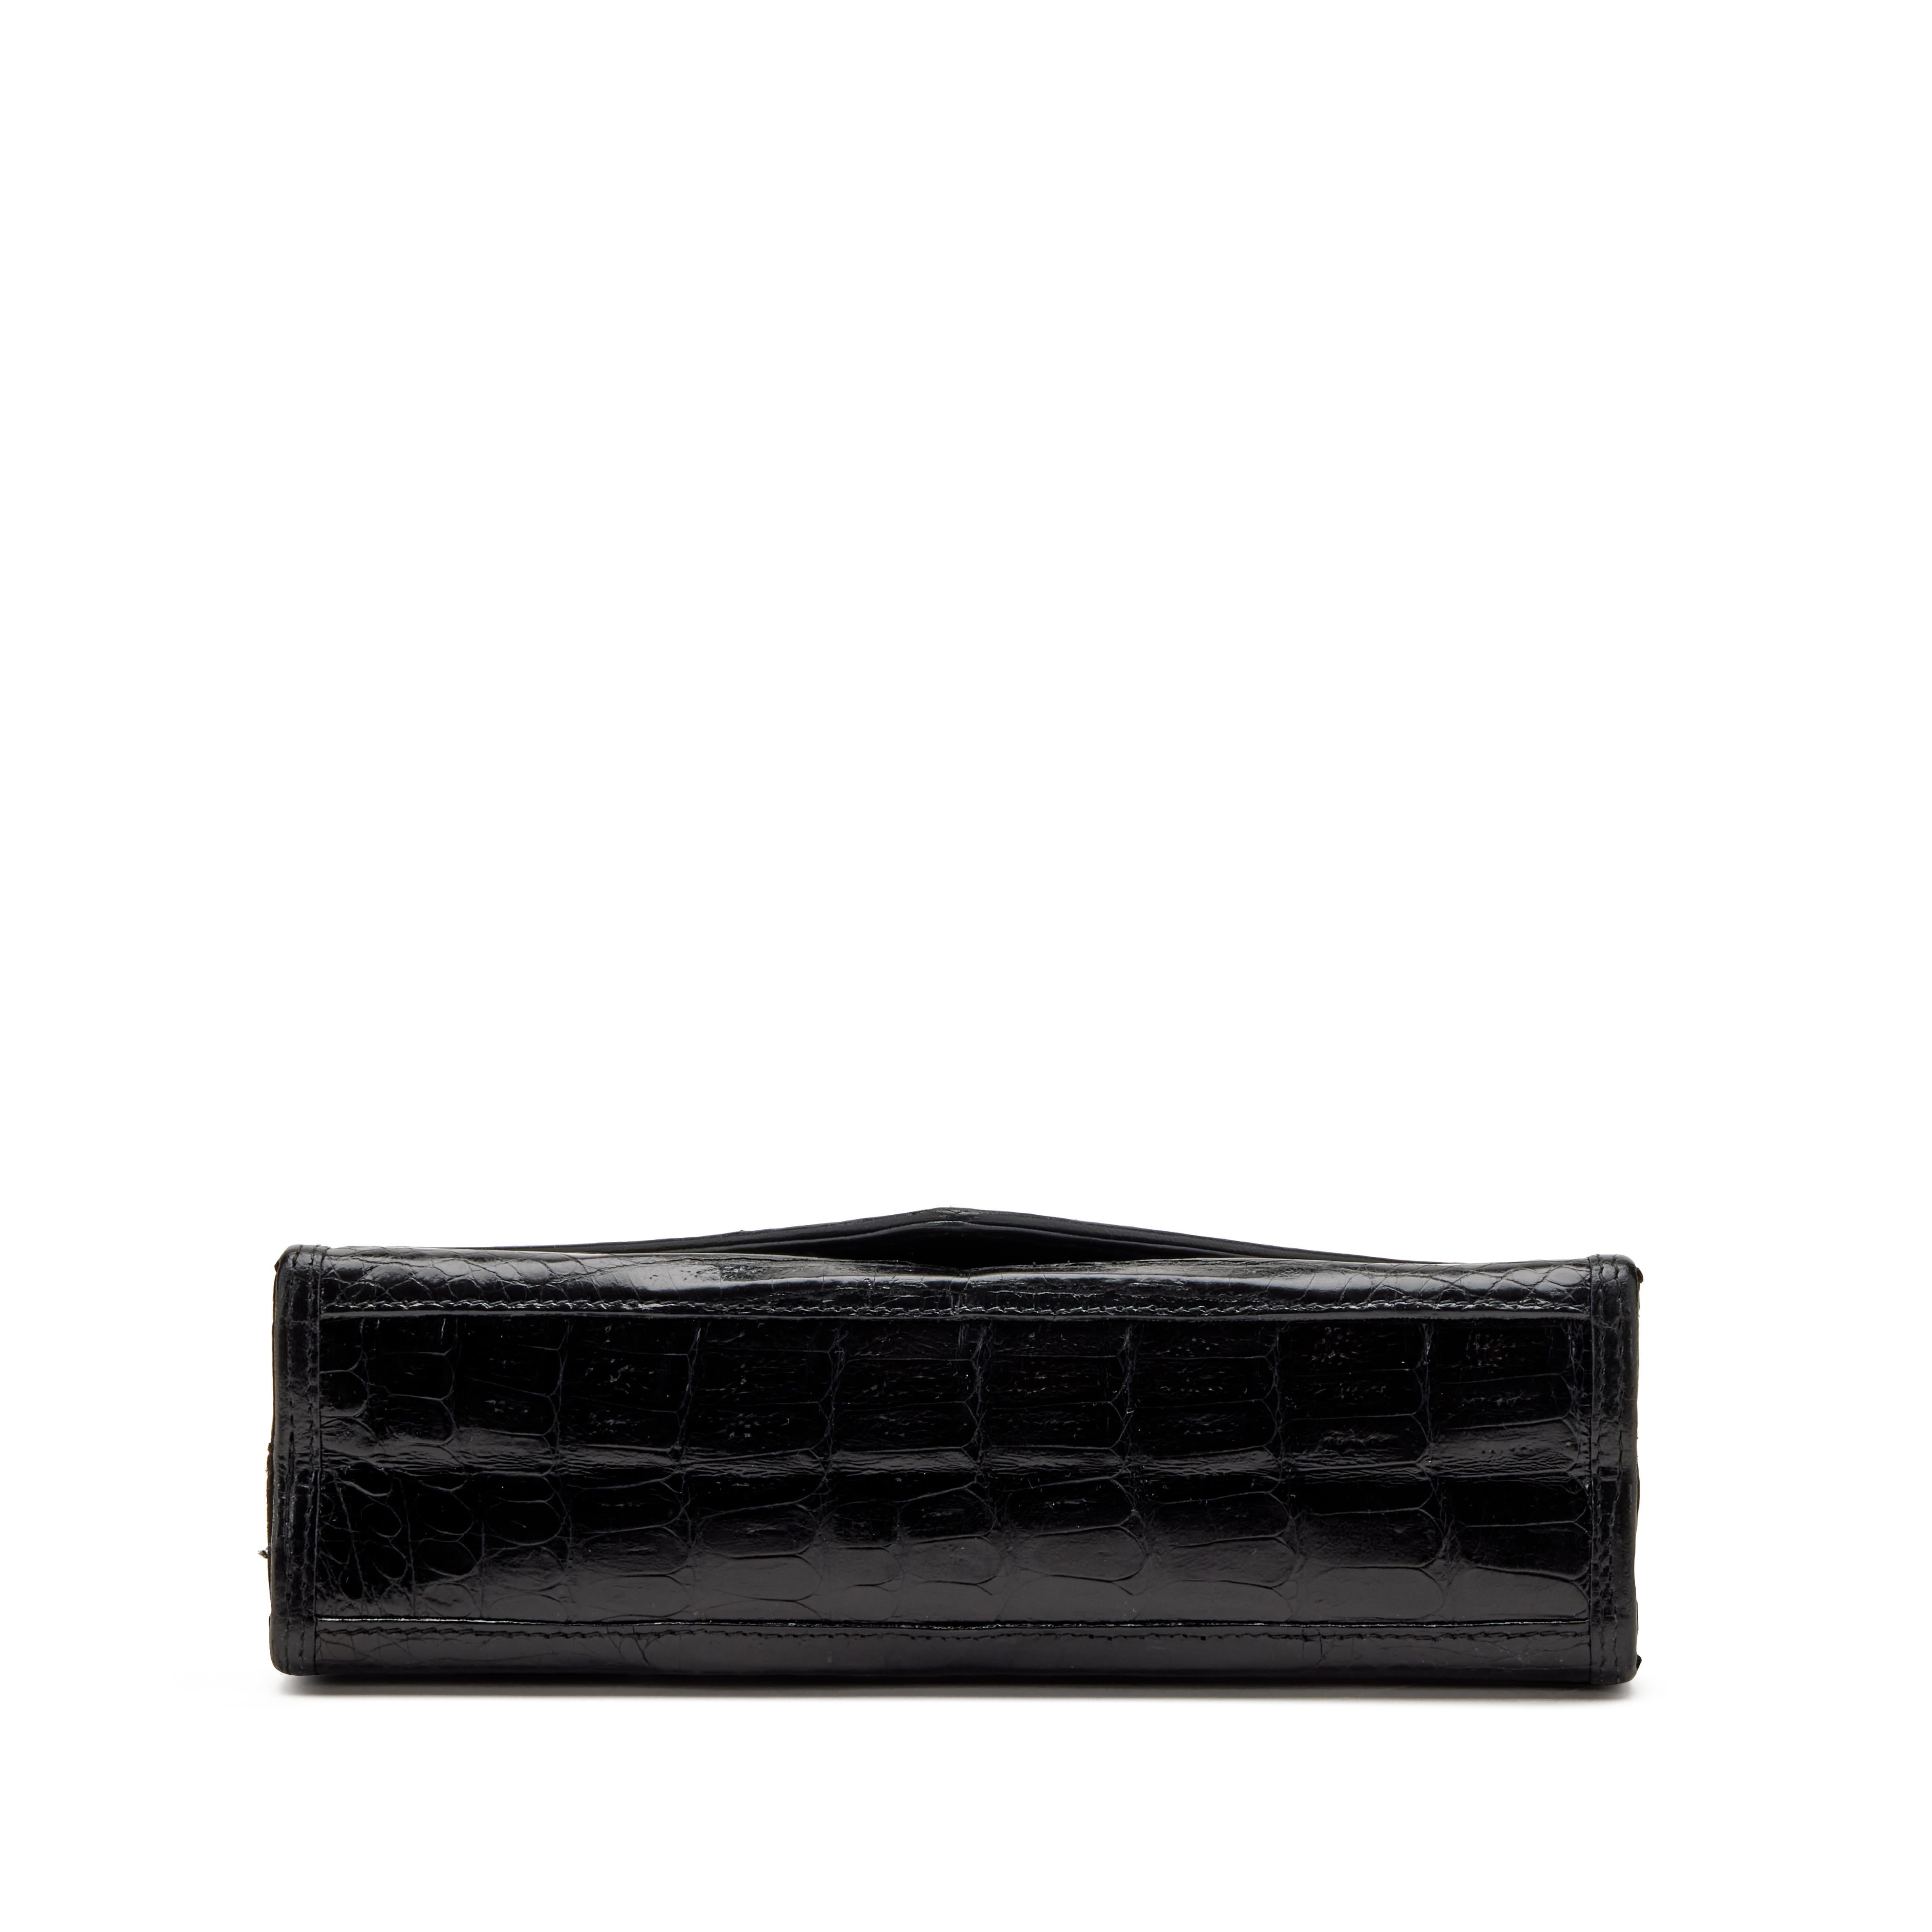 Chanel 1980's Black Classic Crocodile Envelope CC Flap Bag Convertible Clutch  For Sale 5